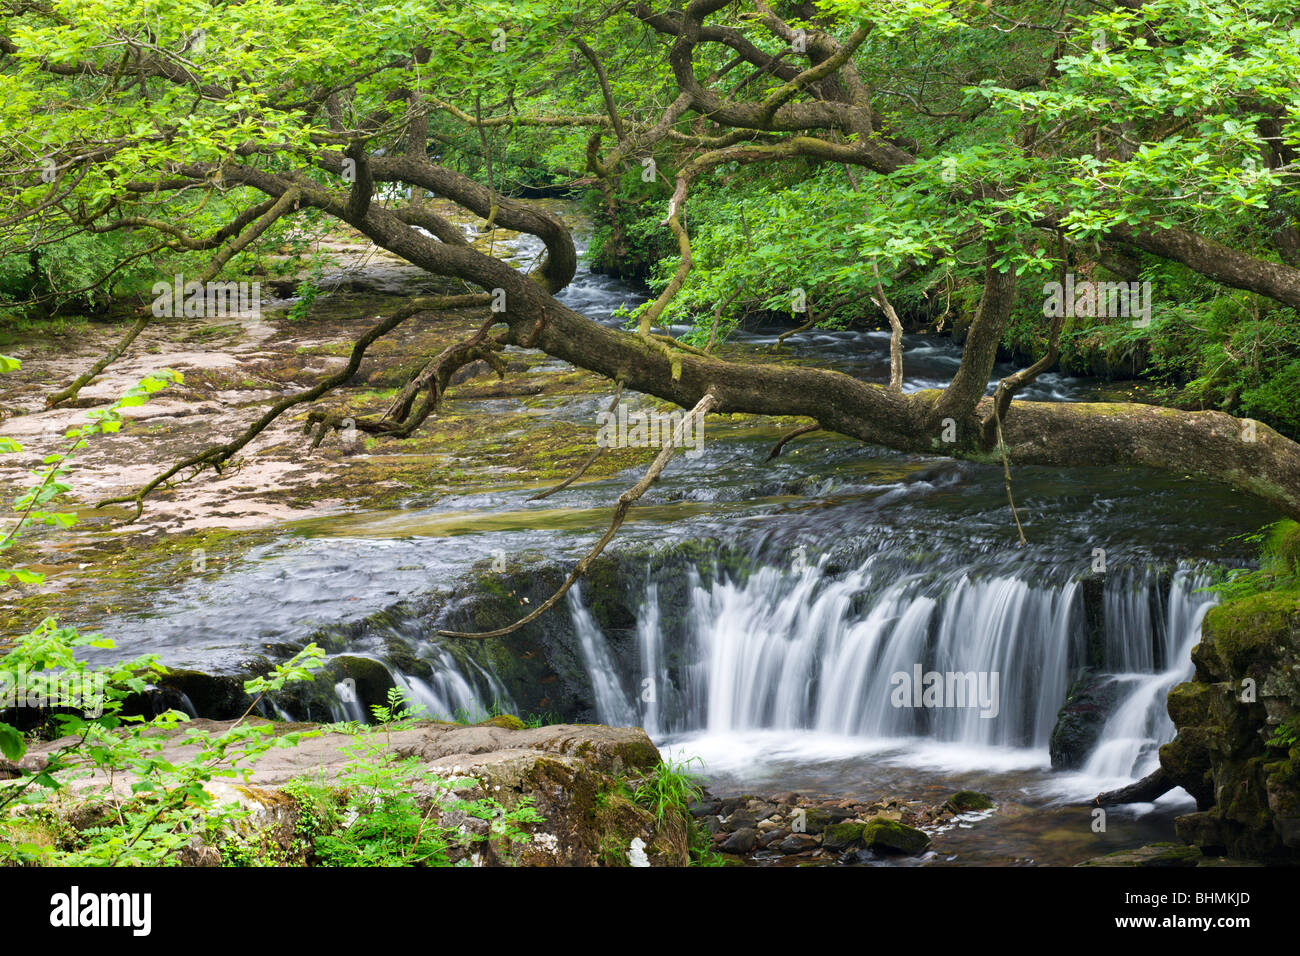 L'Nedd Fechan River at Horseshoe Falls, parc national de Brecon Beacons, Mid Glamorgan, Pays de Galles, Royaume-Uni. En été (juin) 2009 Banque D'Images